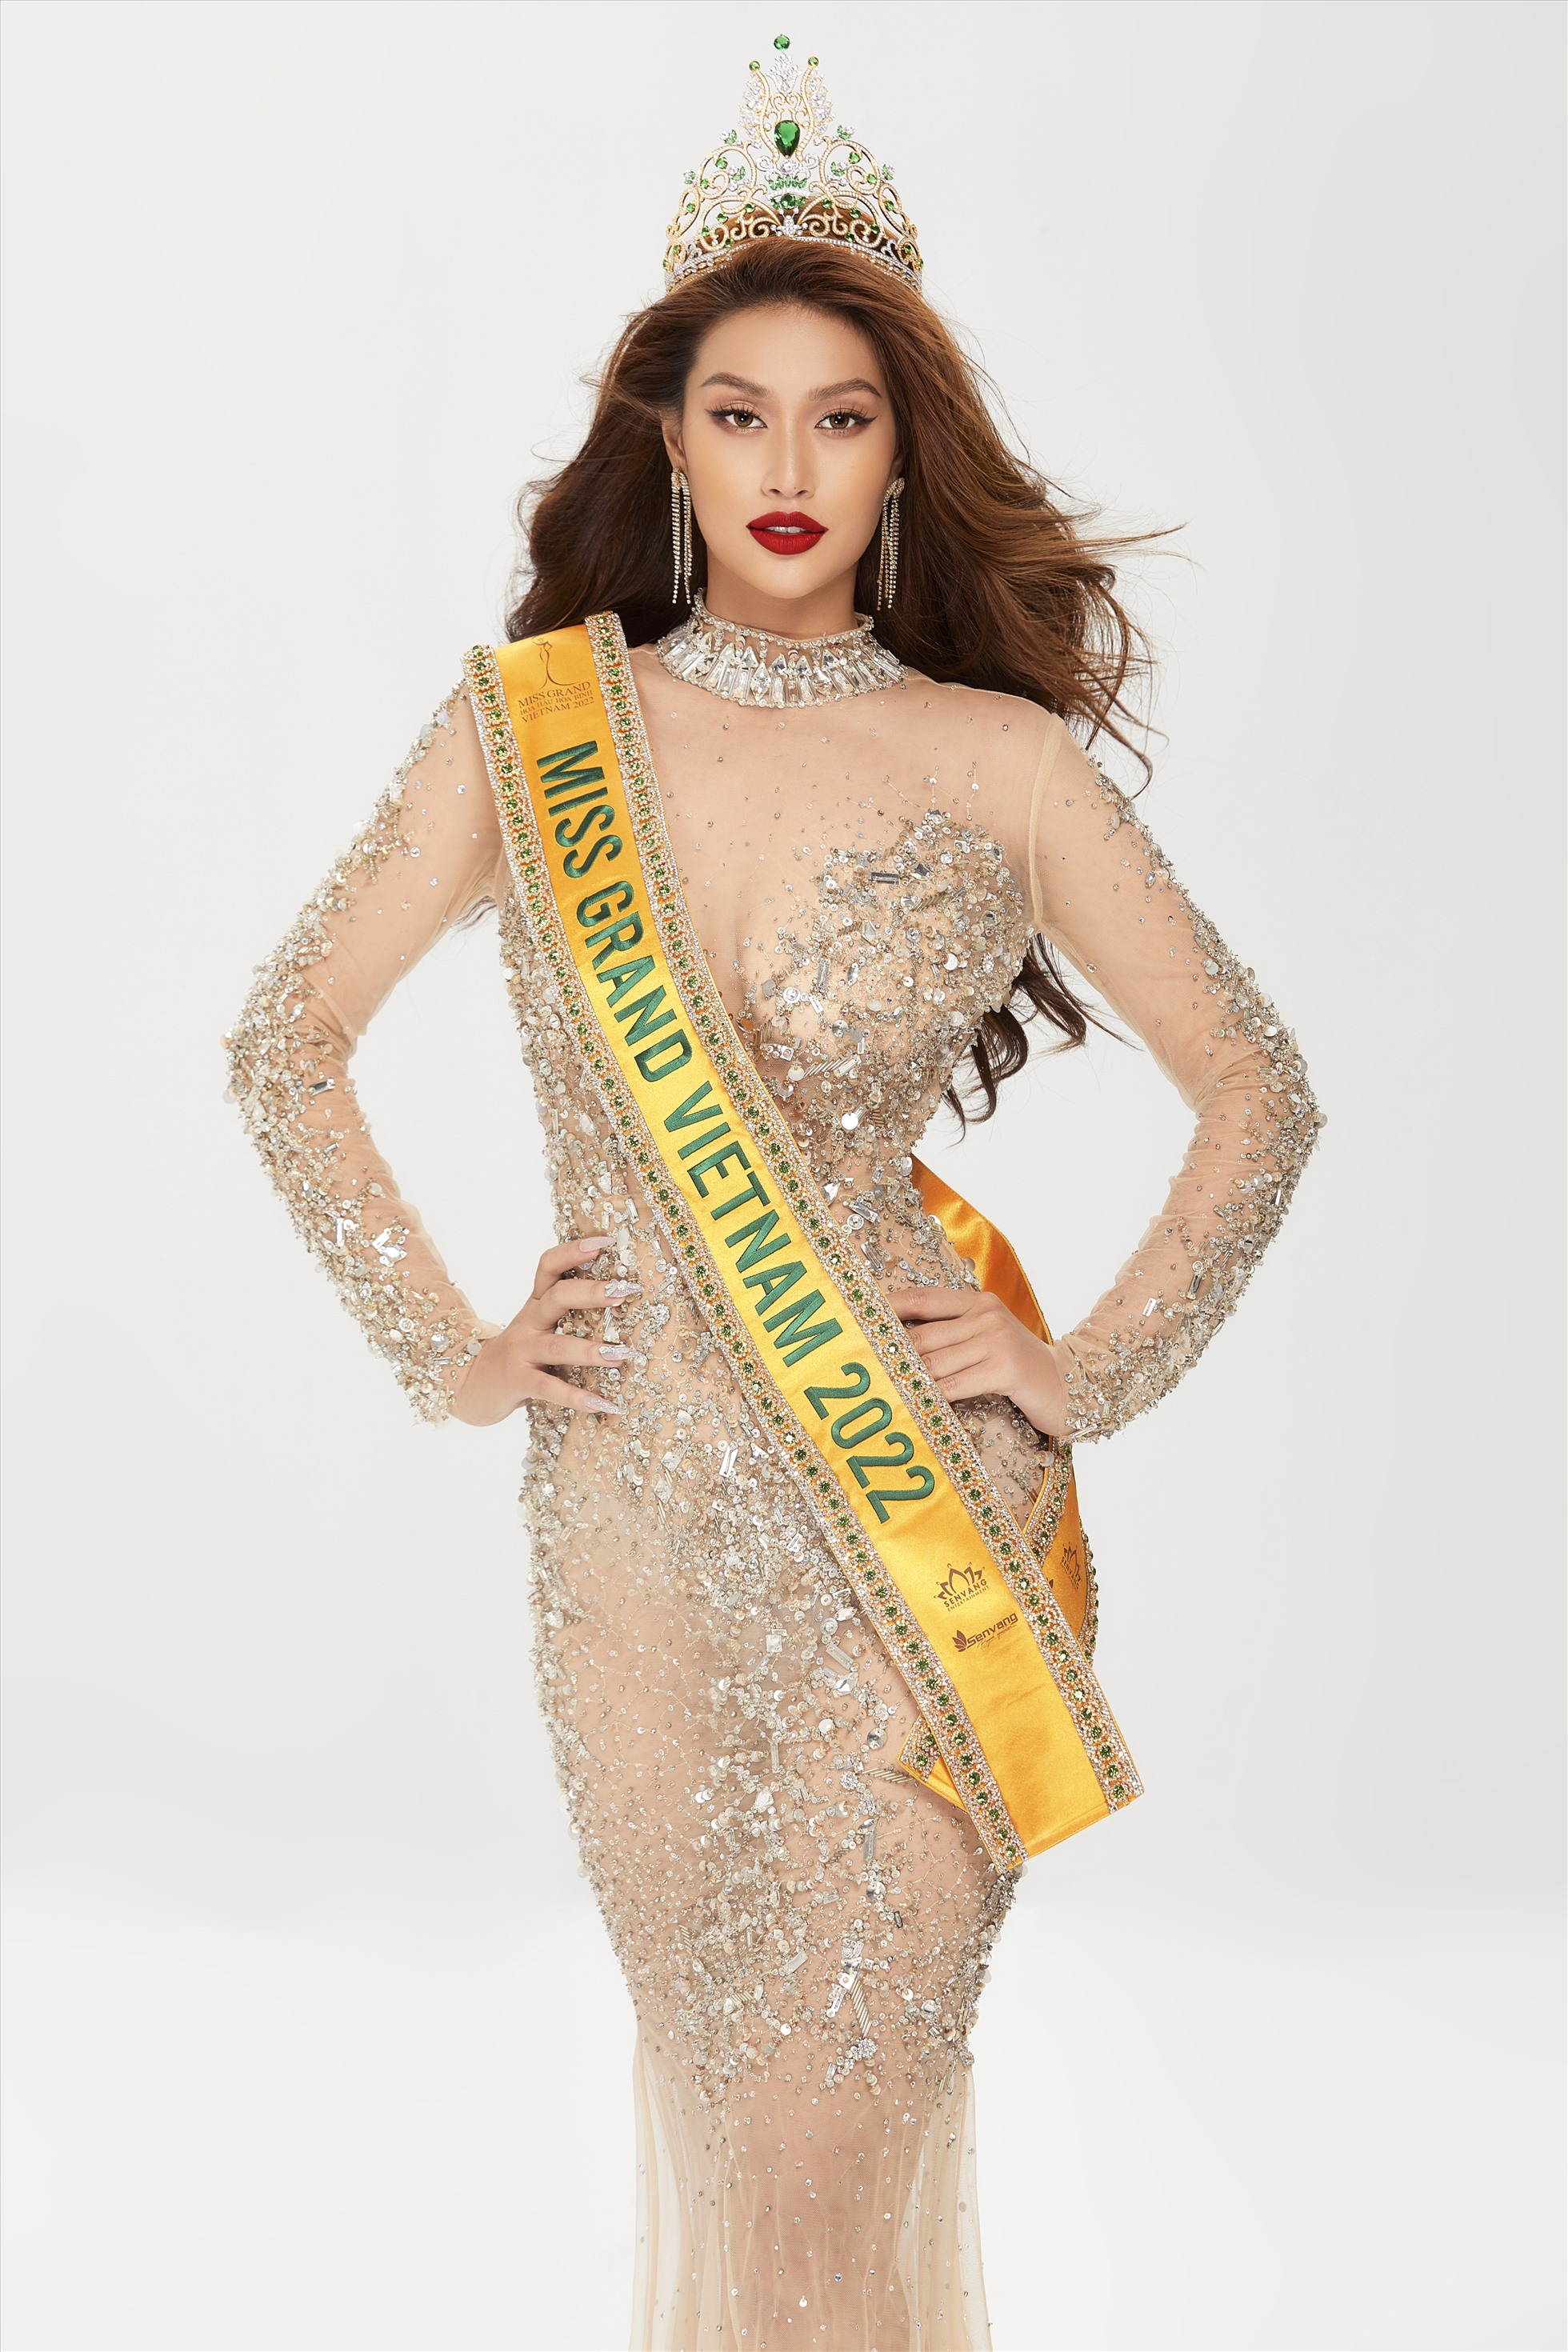 Thiên Ân đã sẵn sàng để chinh chiến tại “Miss Grand International 2022“. Ảnh: NVCC.